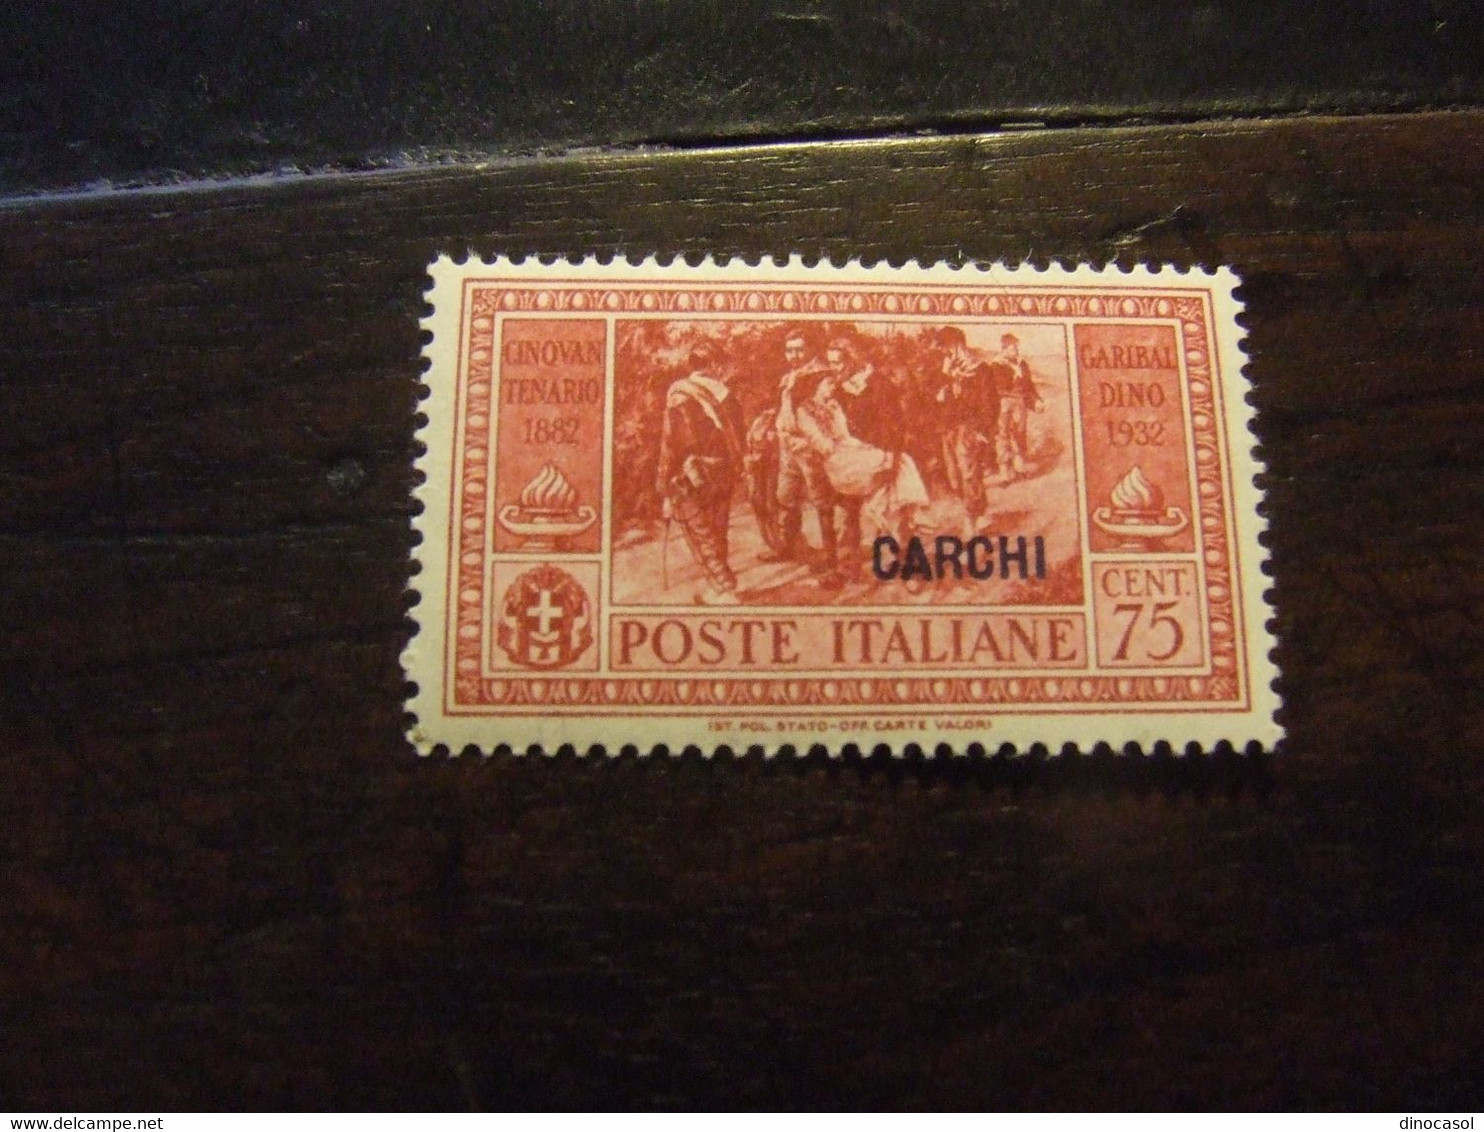 CARCHI 1932 GARIBALDI 75 C NUOVO * - Egeo (Carchi)